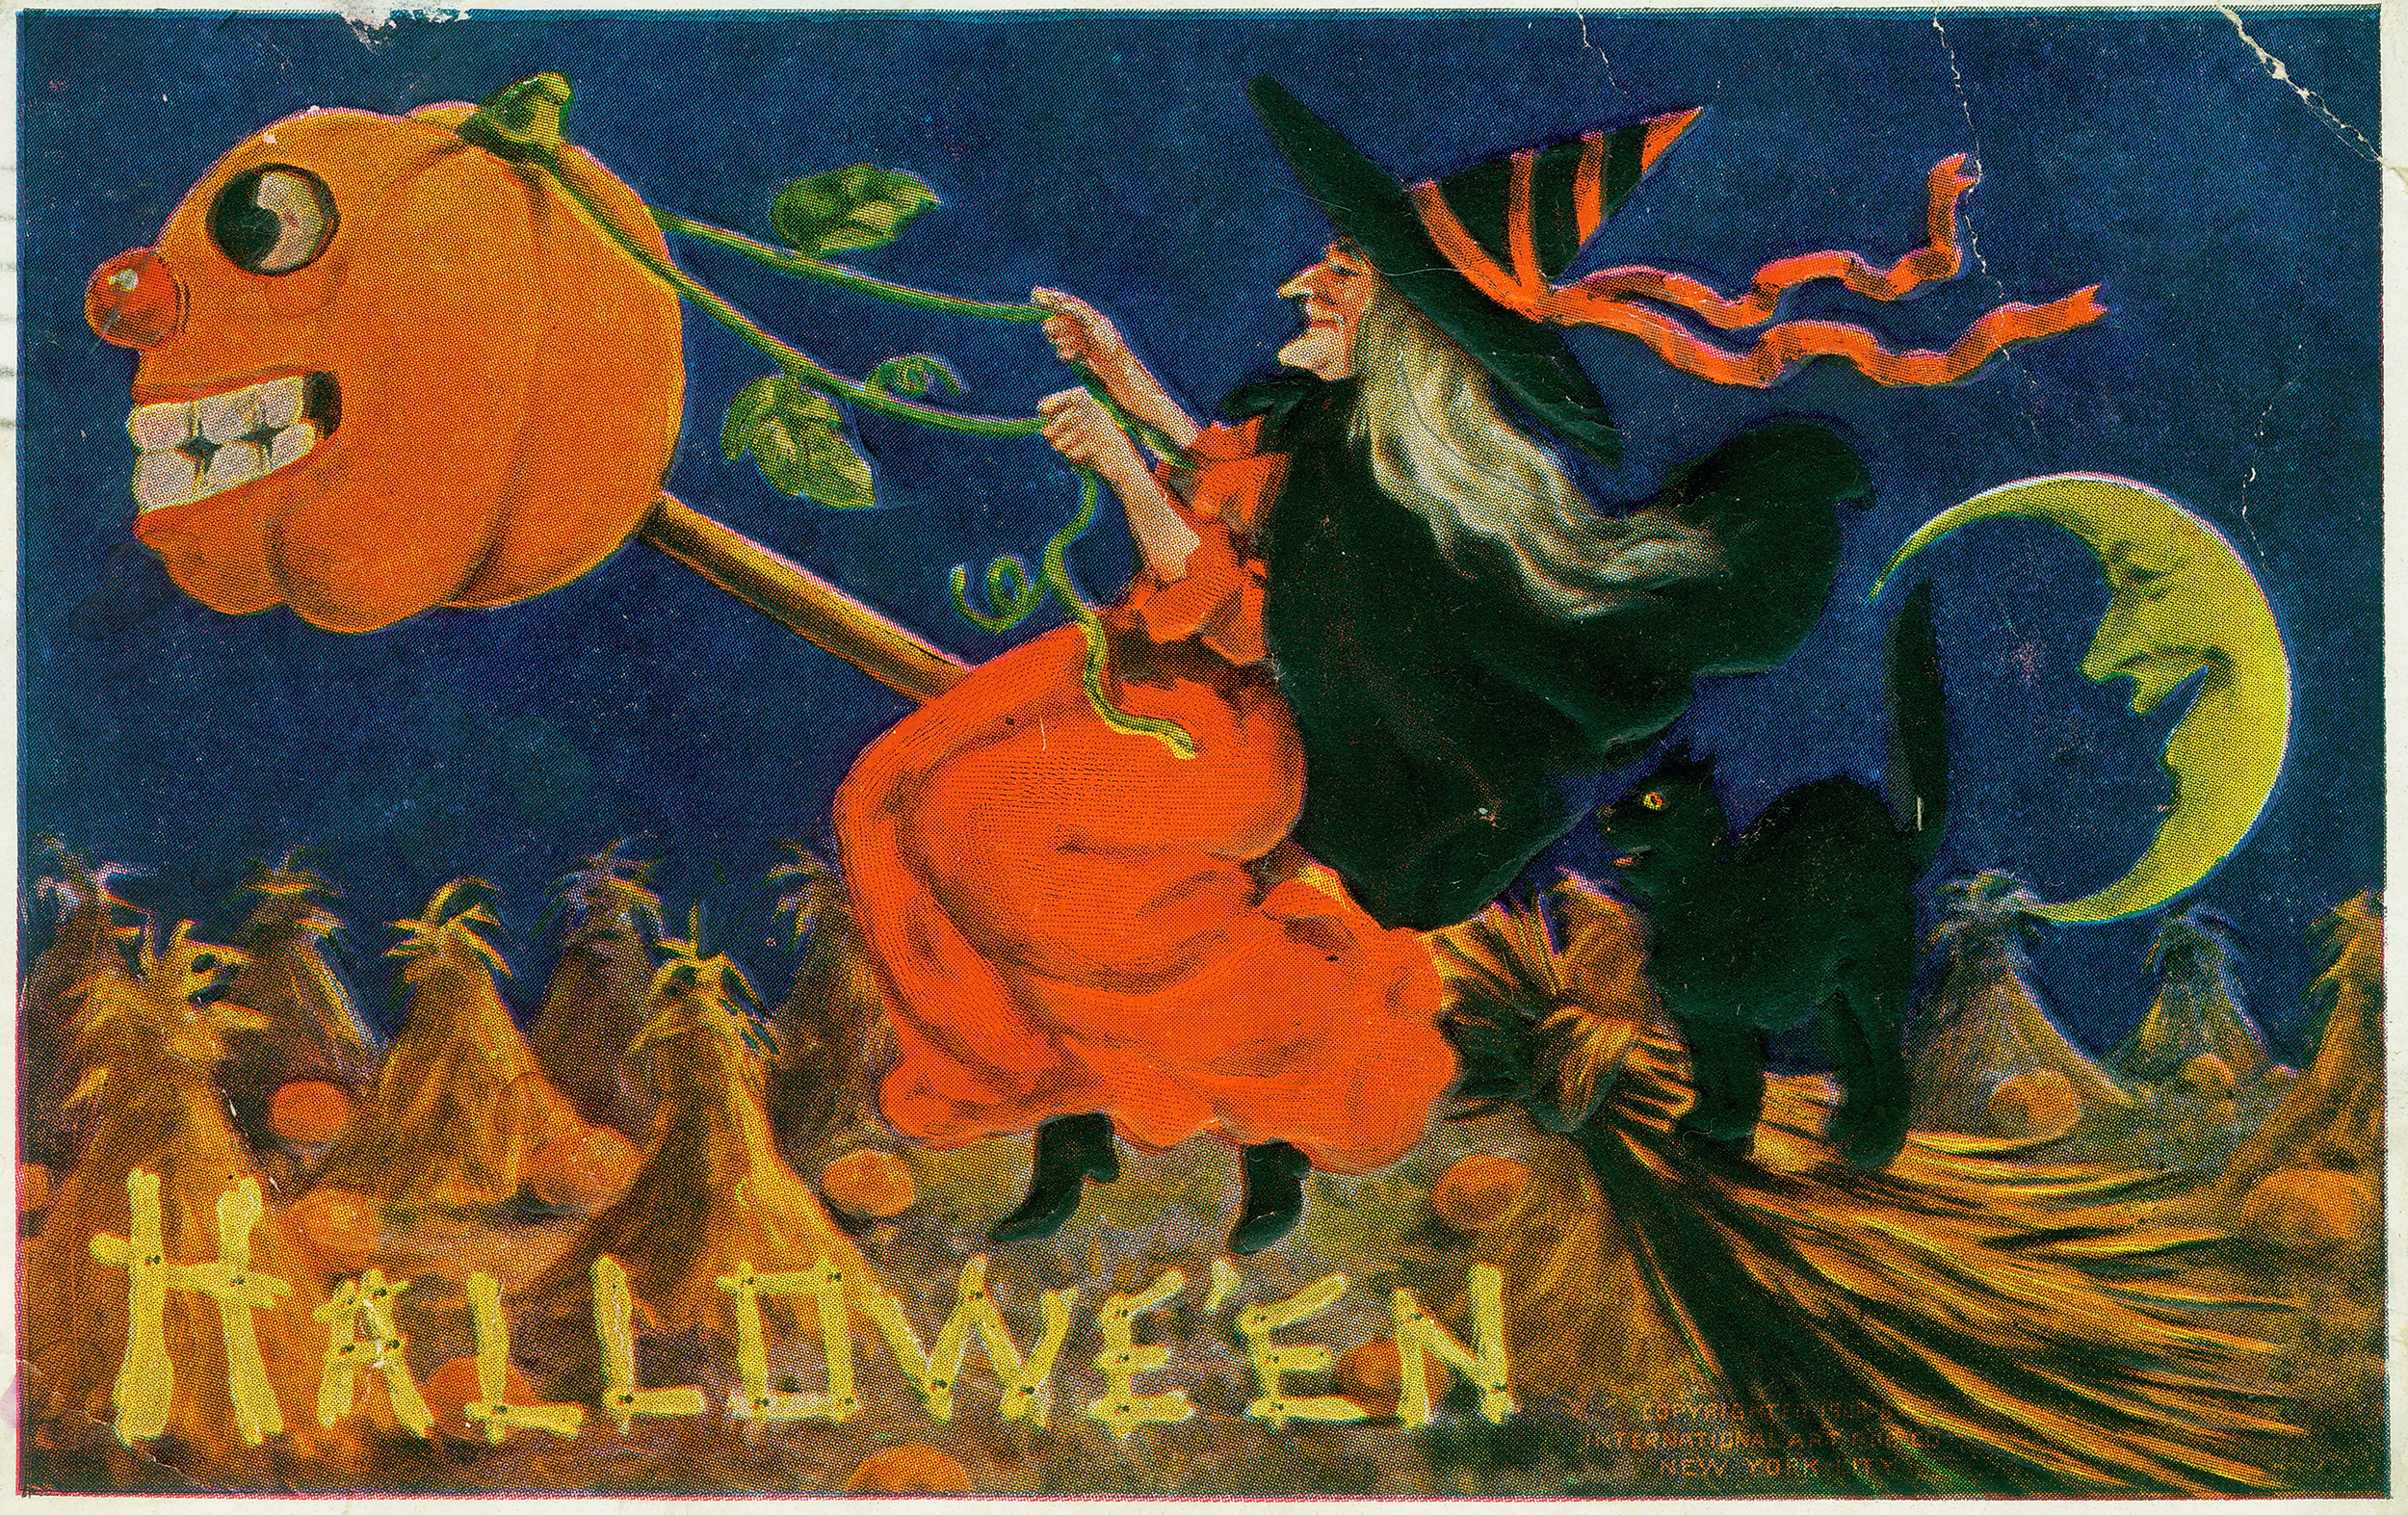 Printable Vintage Halloween Cards_81630